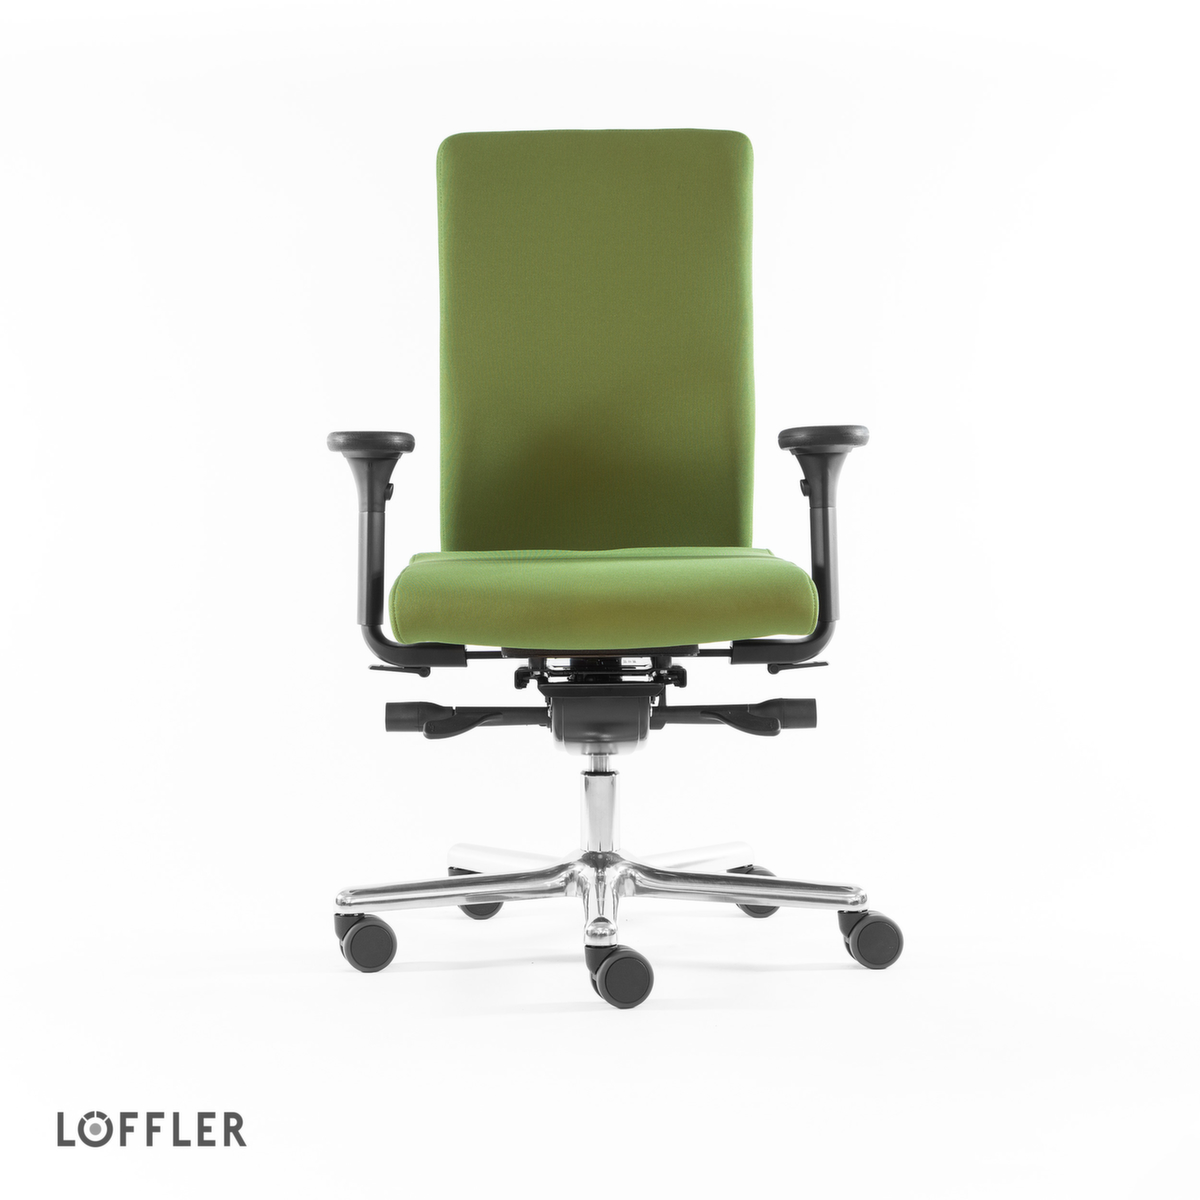 Löffler Siège de bureau pivotant avec assise à noyau de ressorts ensachés, vert  ZOOM